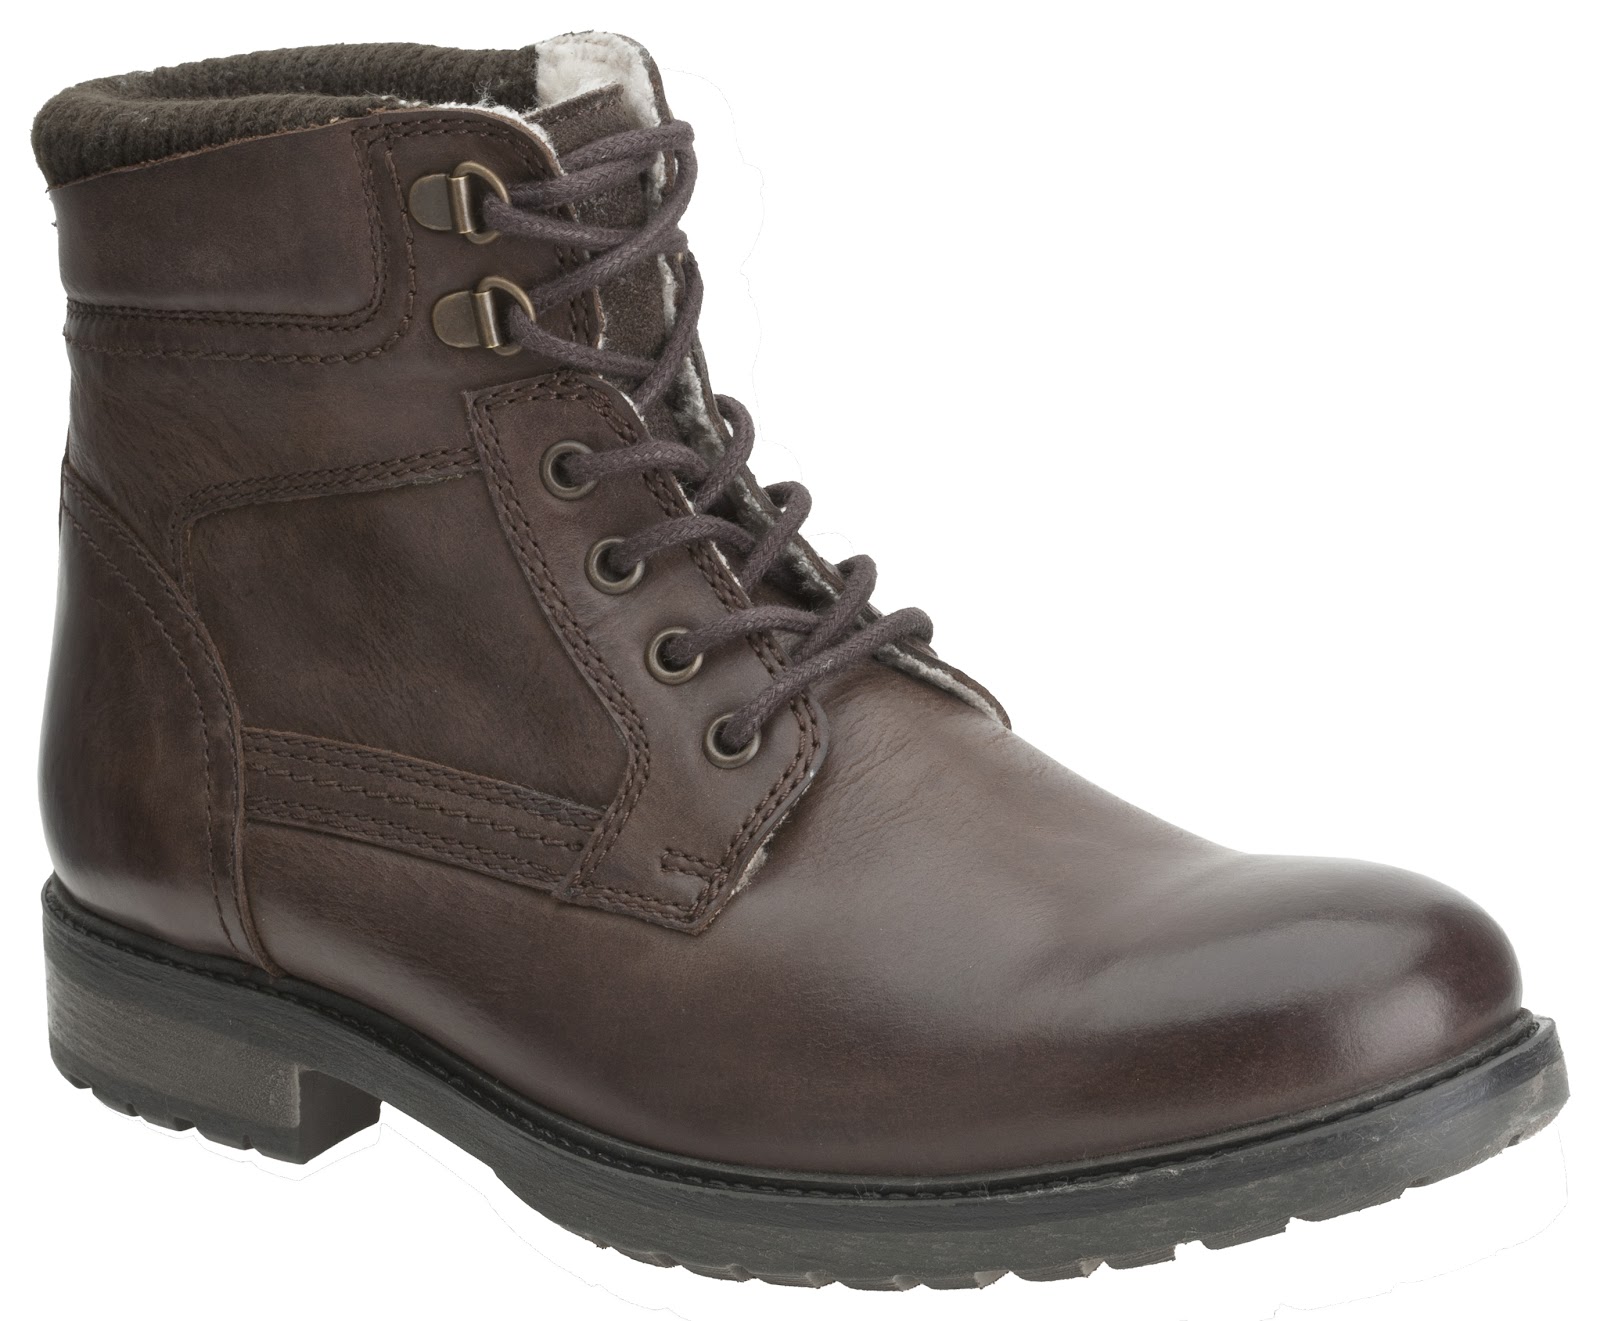 Clark's Autumn/Winter 12 - Essential Winter Boots ~ A La Male